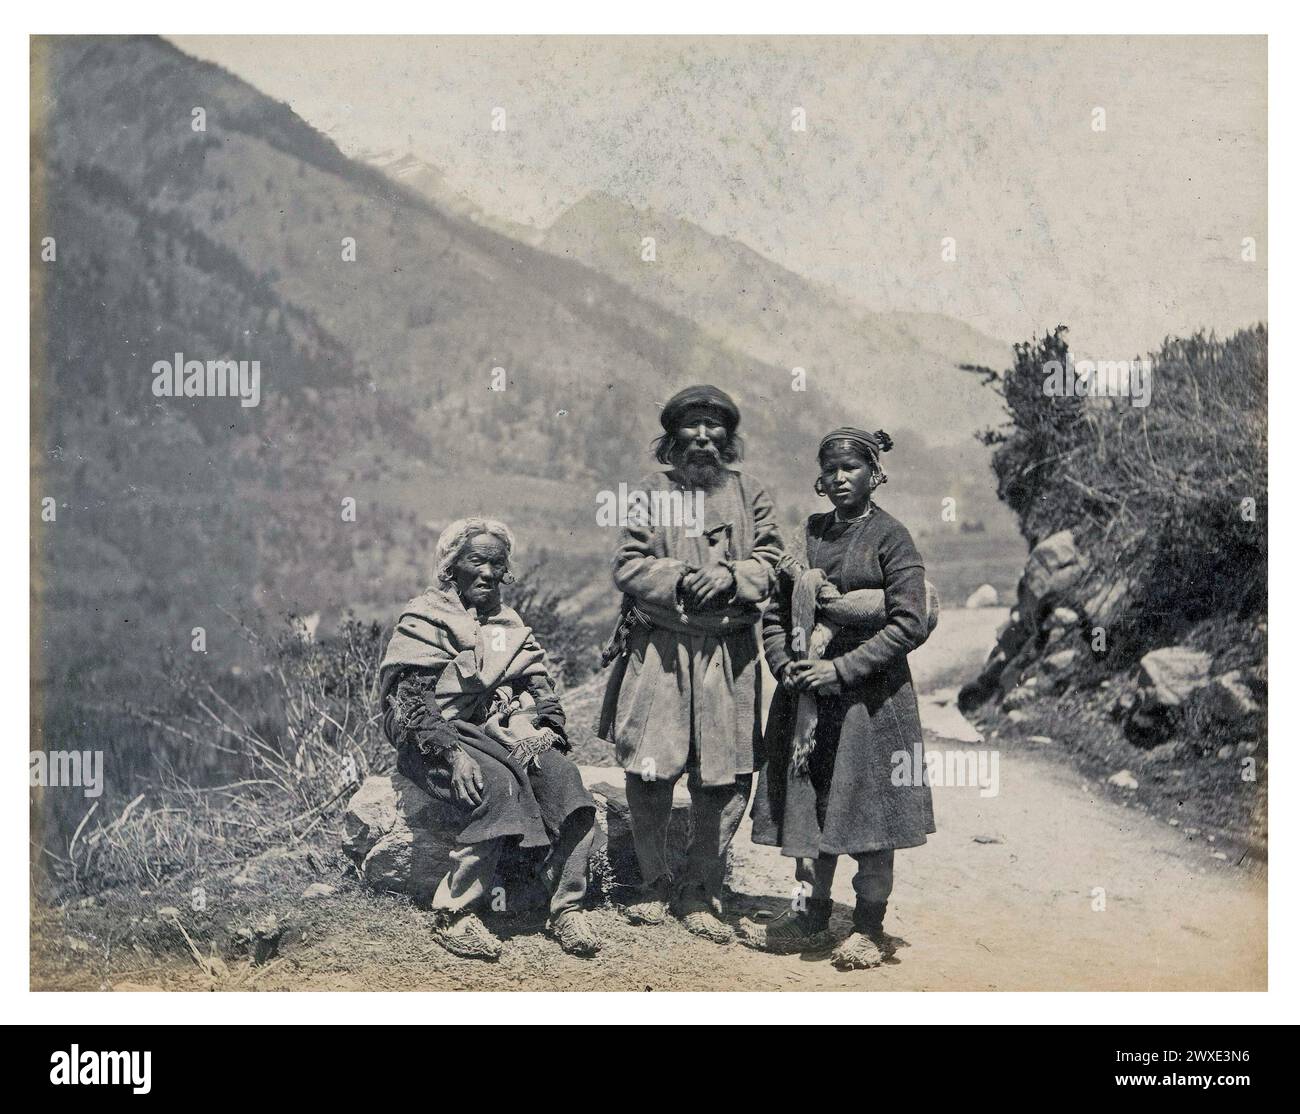 Antikes Foto. Gruppenporträt von drei Einwohnern aus Ladakh oder Spiti in Kullu, Himachal Pradesh, Indien. Originaltitel: „Natives of Ladock“, wahrscheinlich fotografiert von Frank Mason Good. Veröffentlicht von Francis Frith & Co. Himachal Pradesh, Indien. 1869 - 1875 Stockfoto